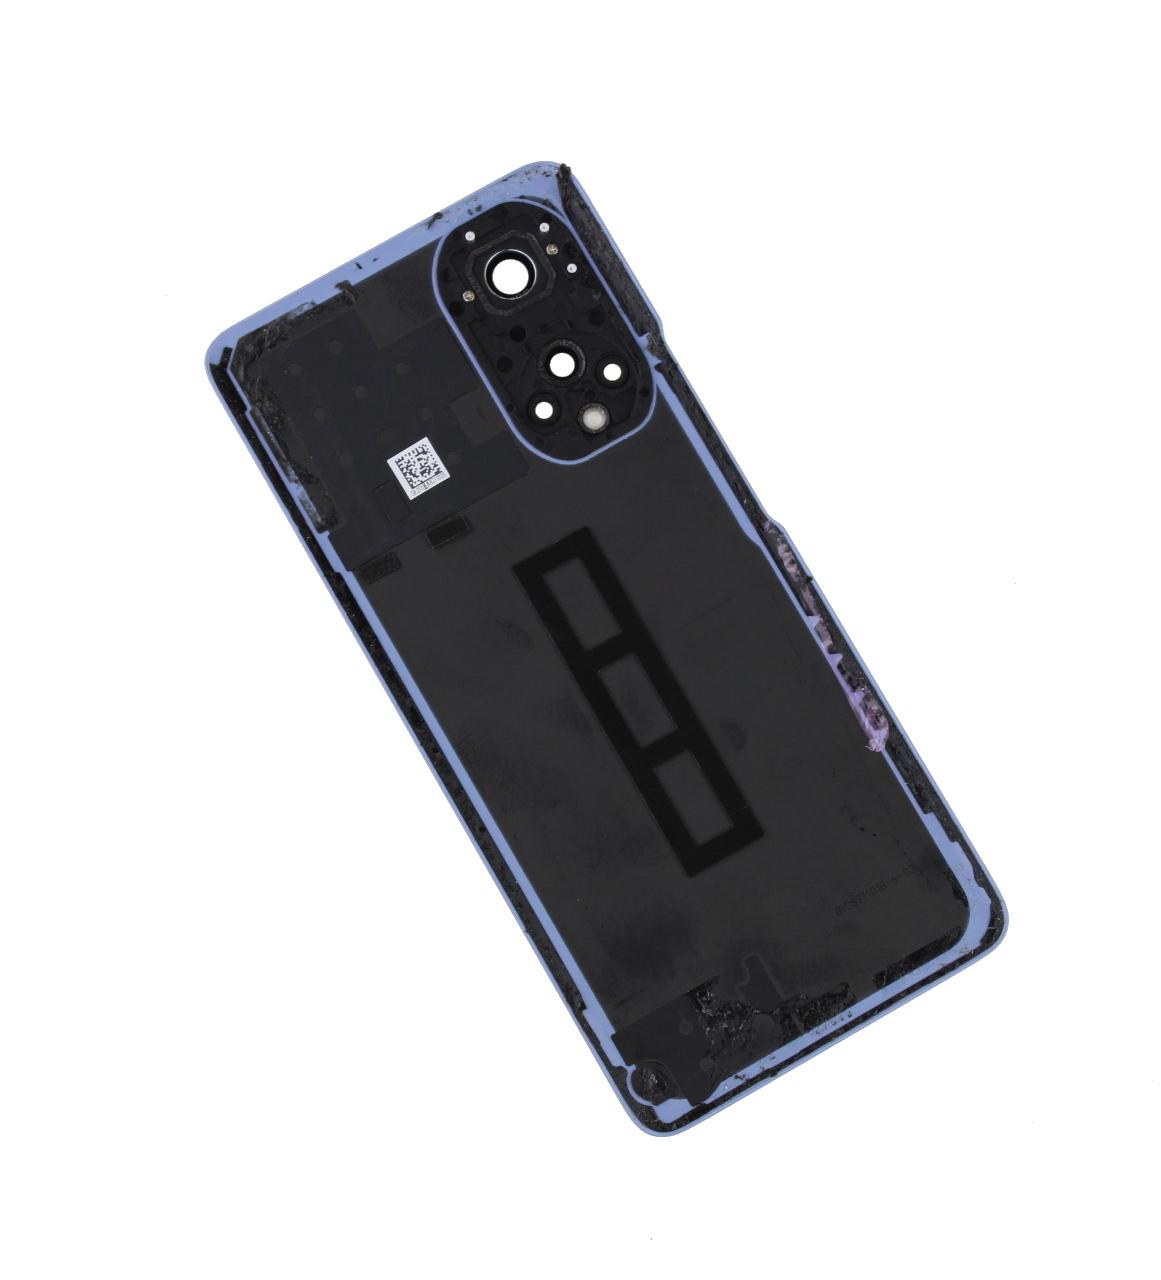 Originál kryt baterie Huawei Nova 9 modro-fialový - demontovaný díl Grade A